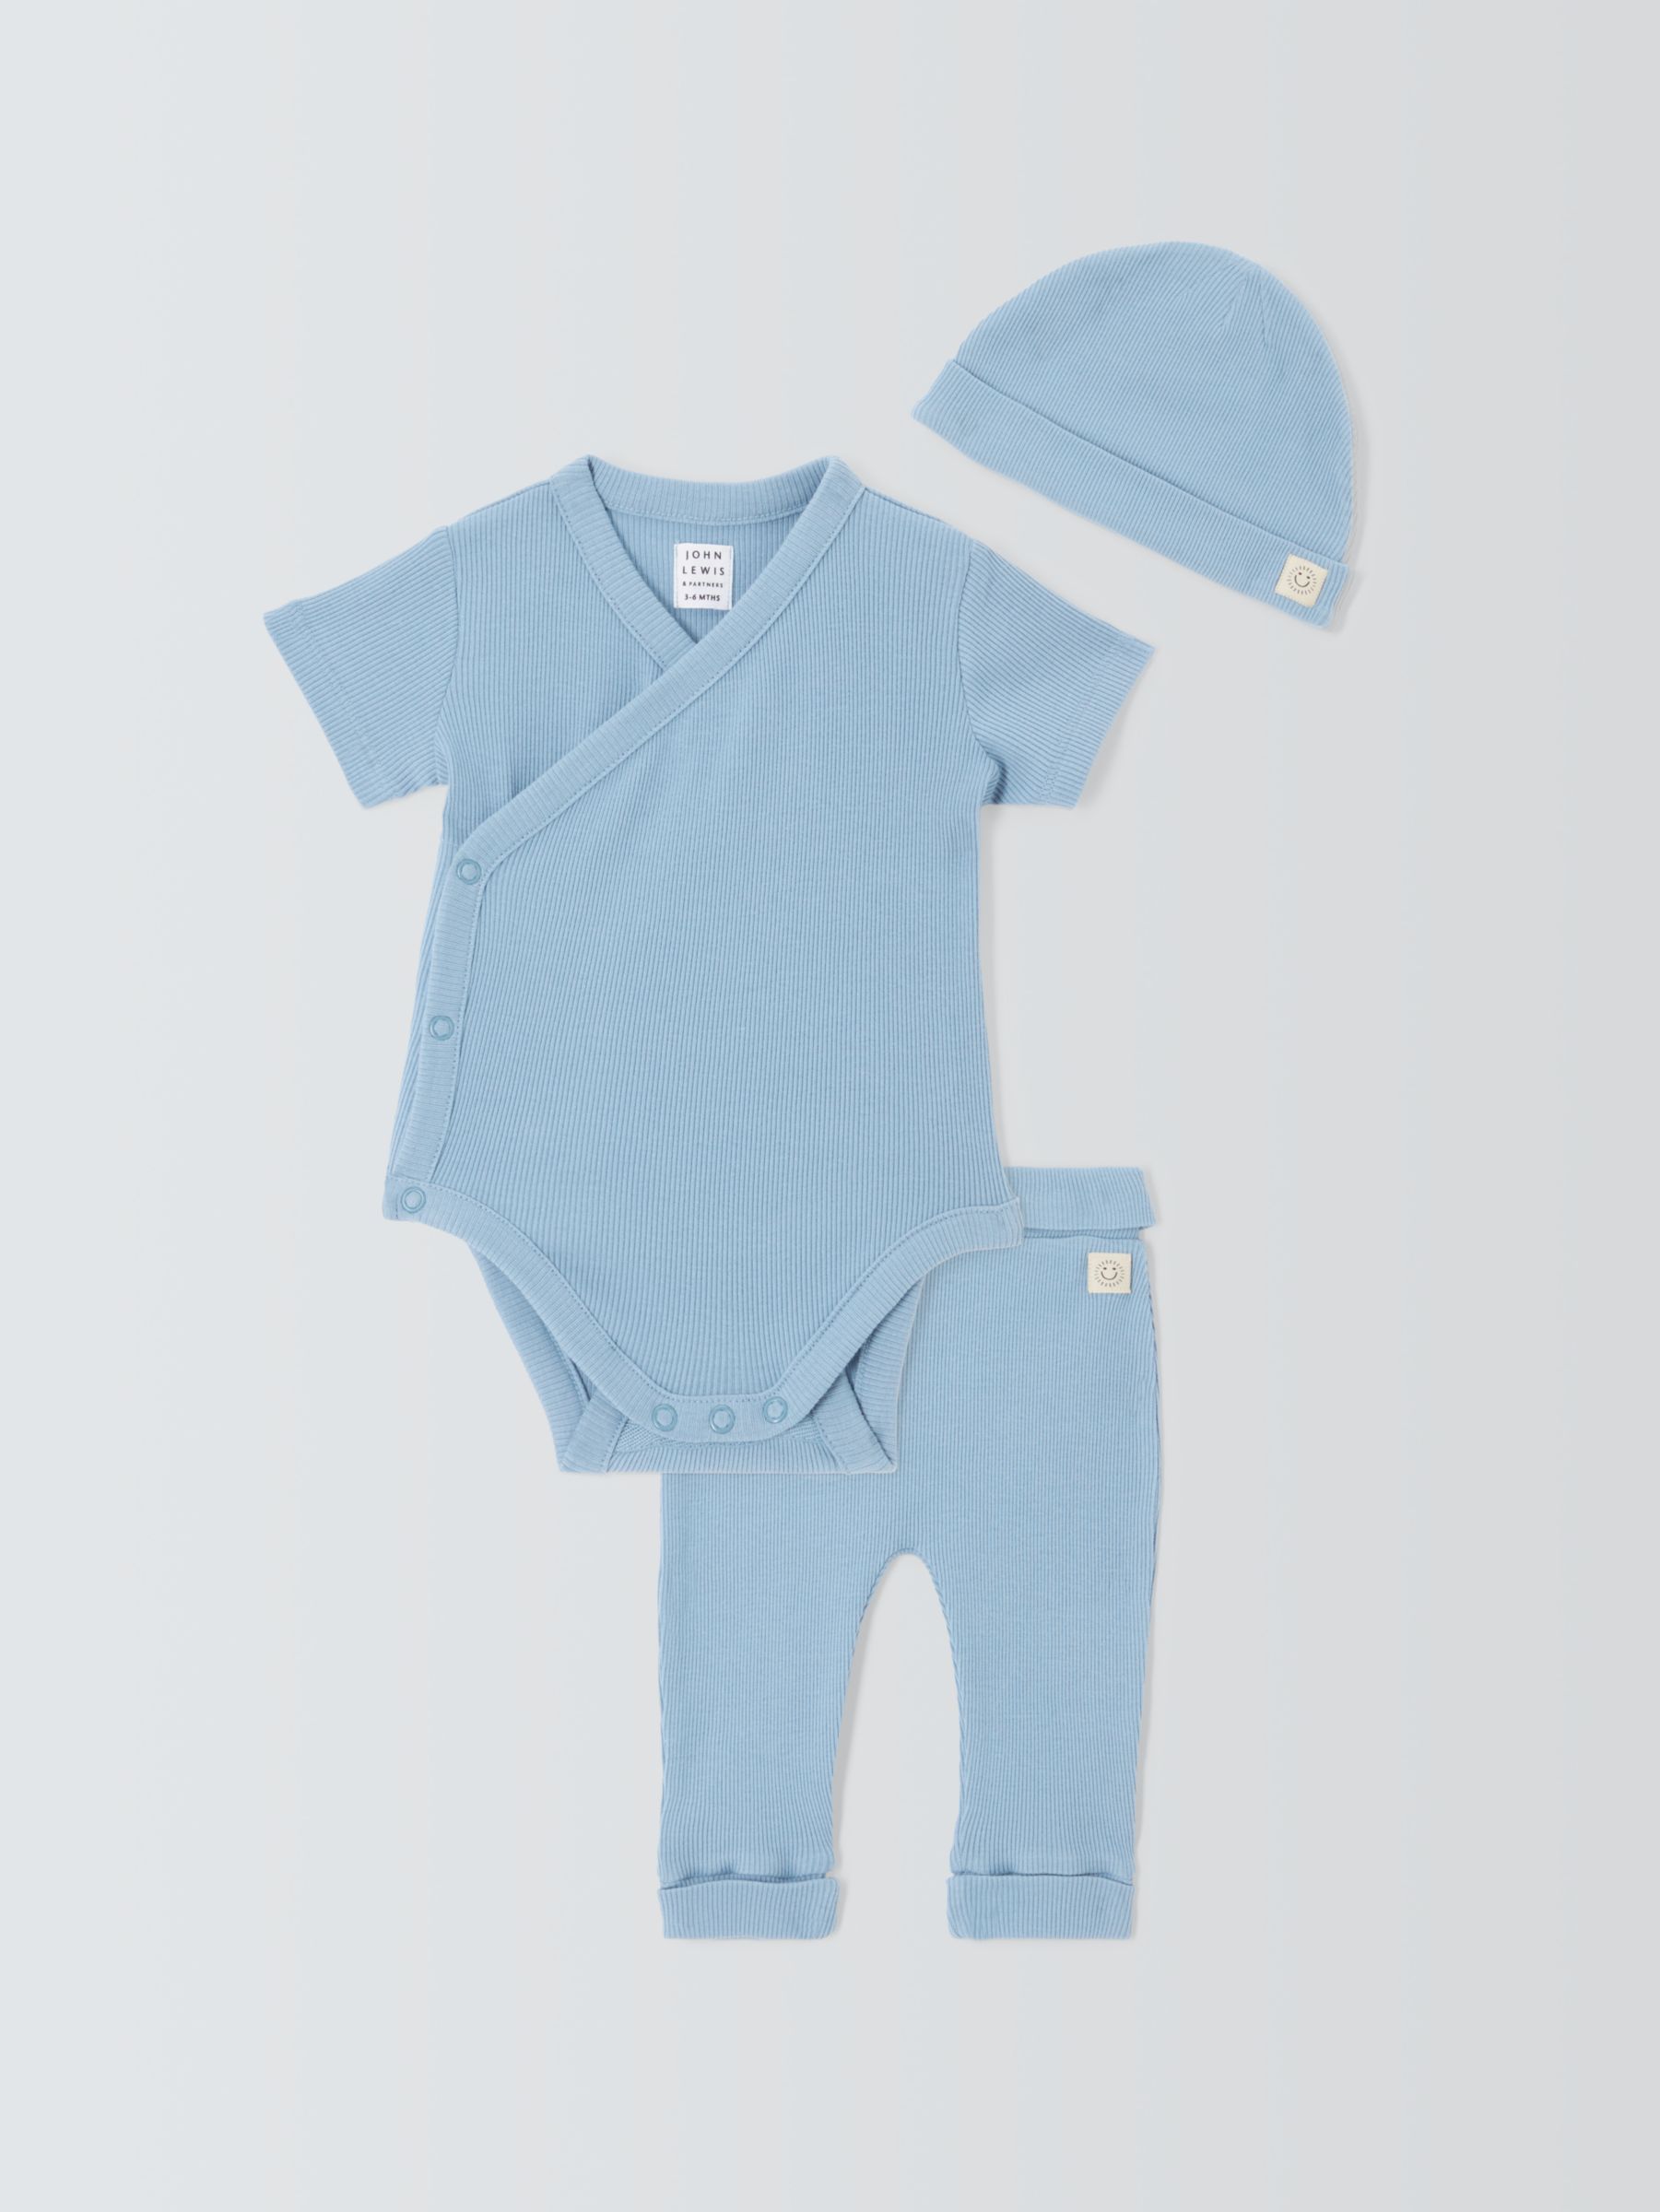 John Lewis Baby Ribbed Bodysuit, Trousers & Hat Set, Blue at John Lewis ...